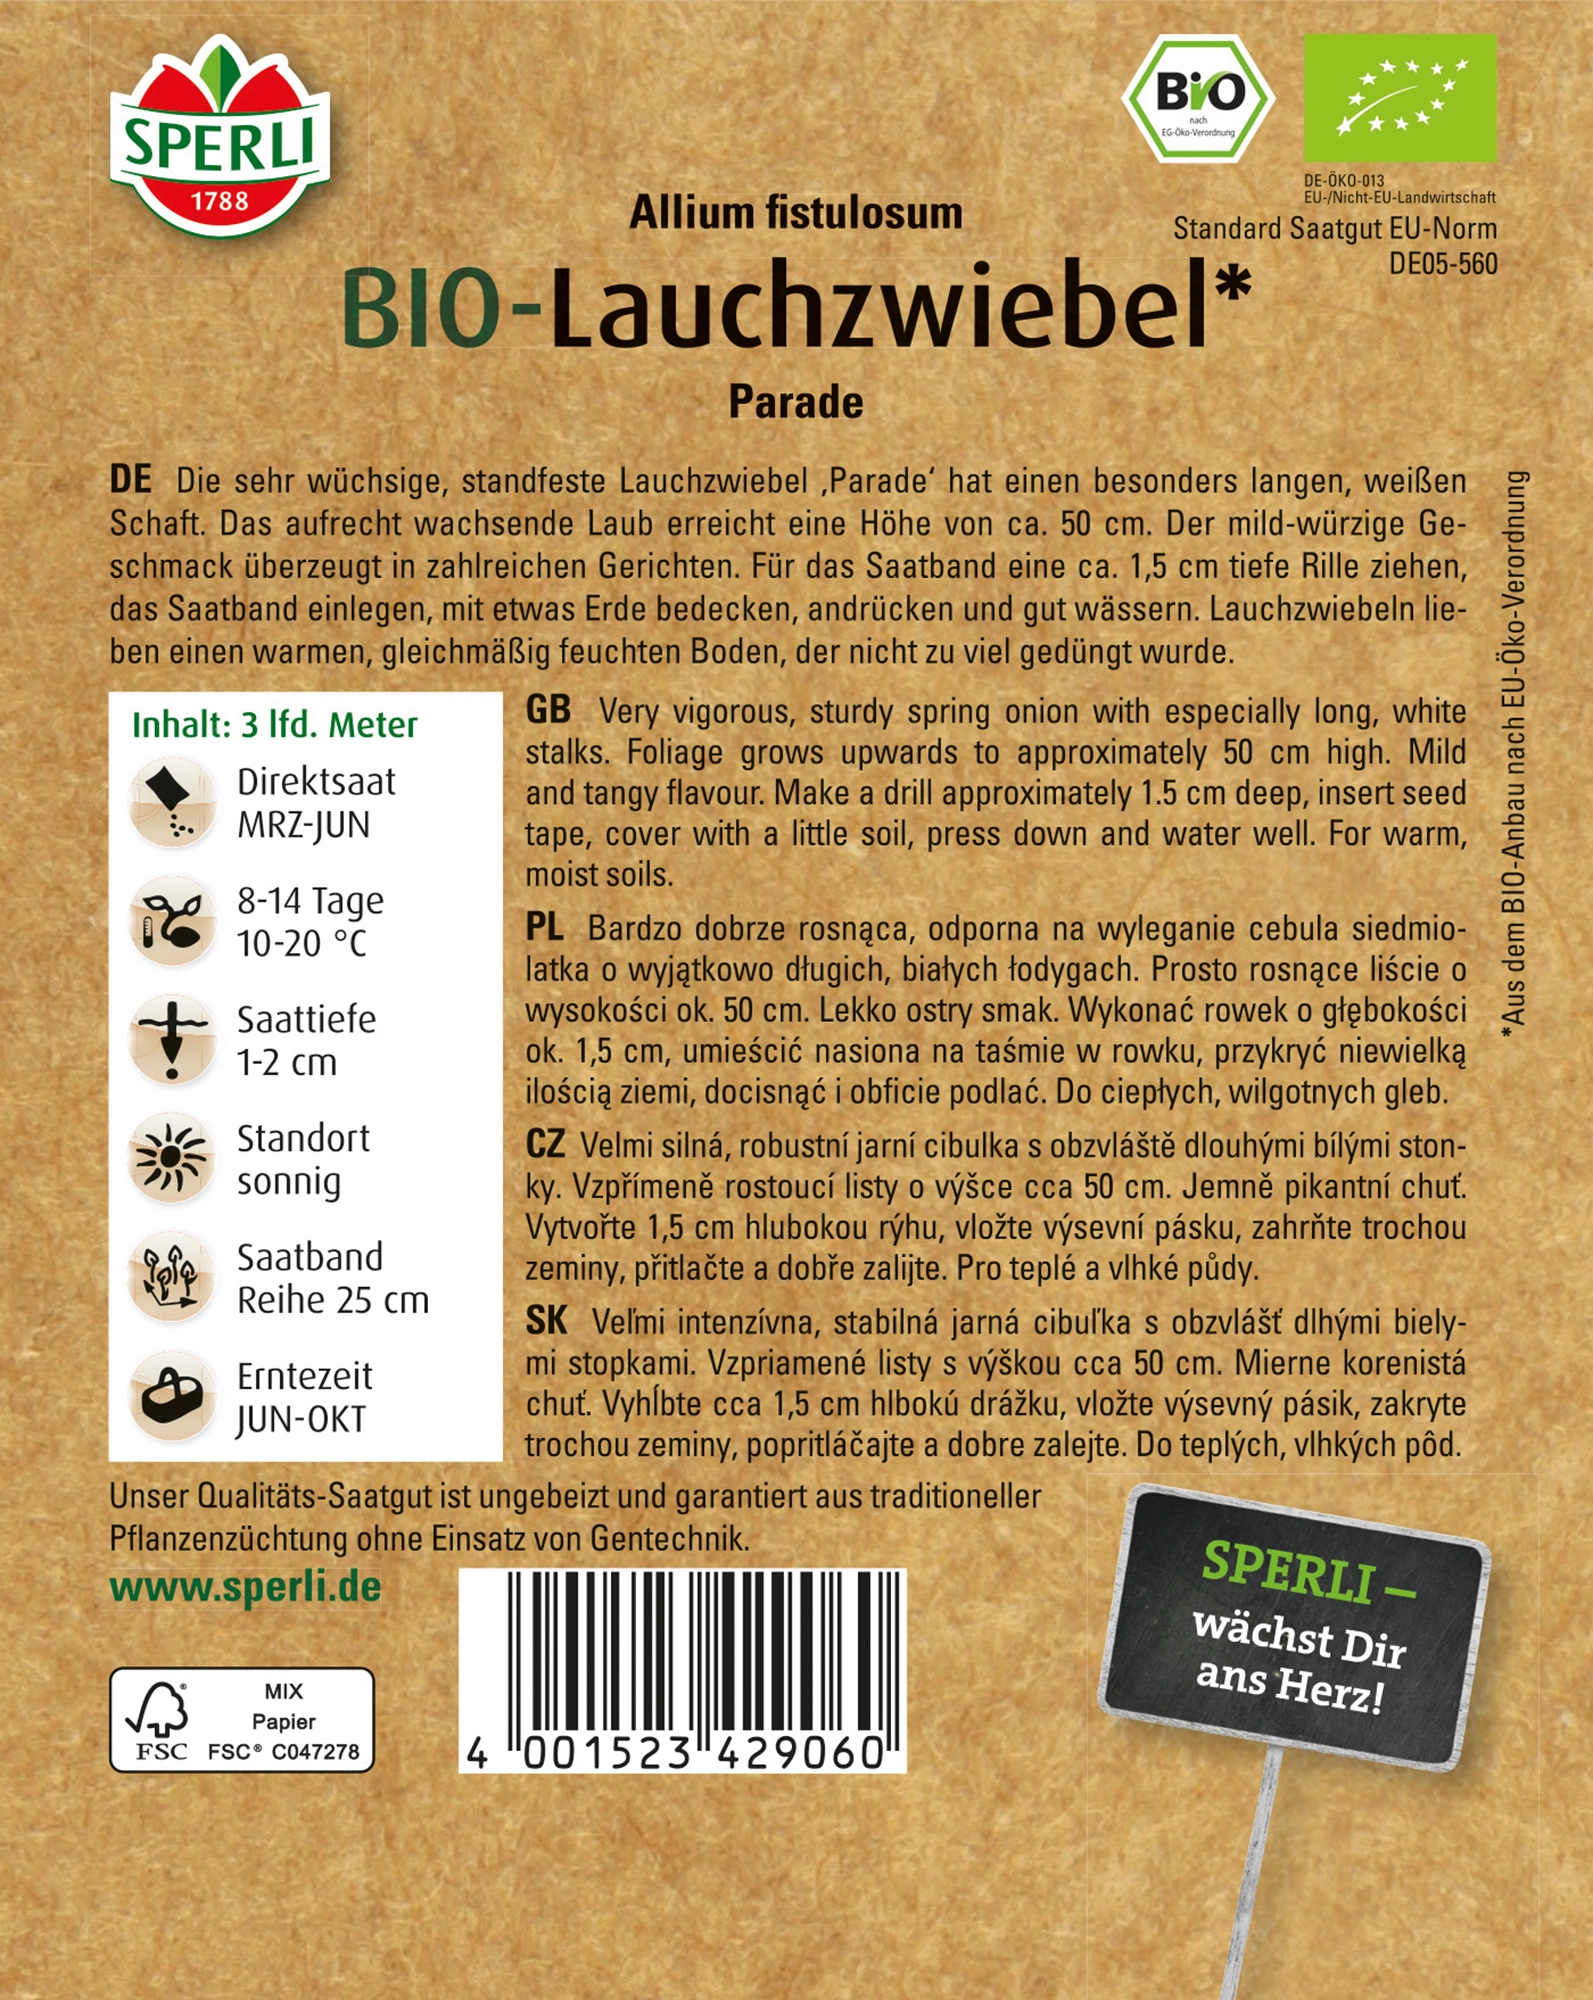 Sperli Bio Lauchzwiebel Saatband Kaufen Bei Obi